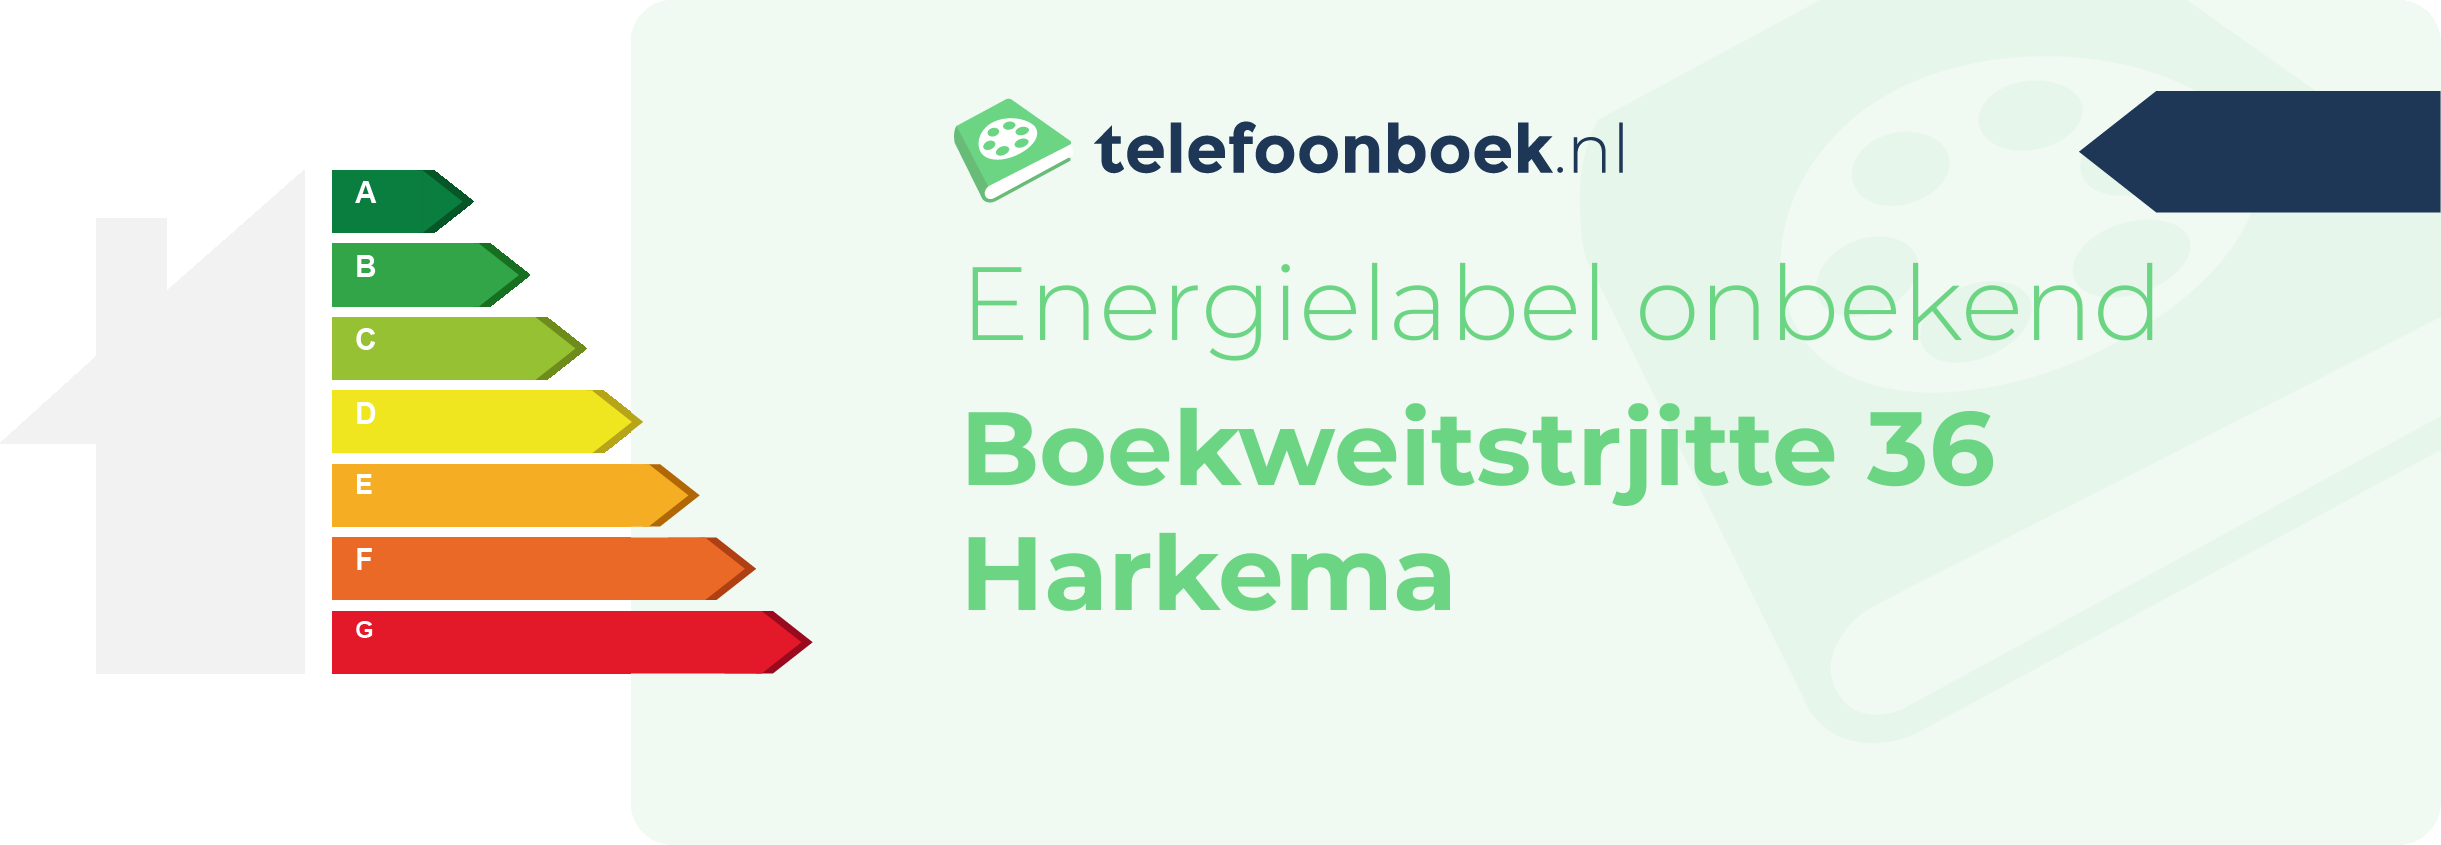 Energielabel Boekweitstrjitte 36 Harkema